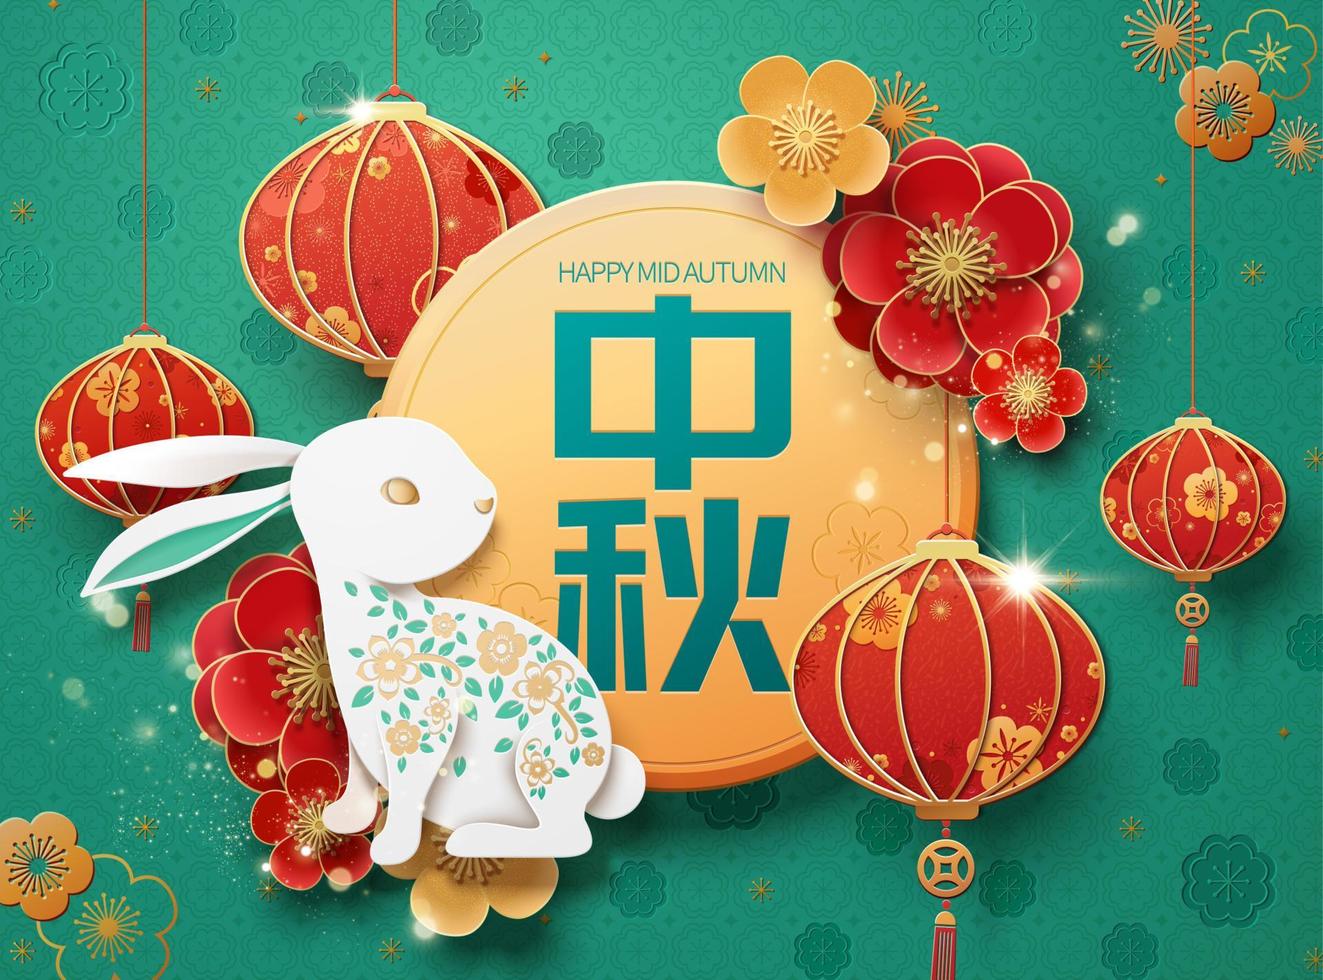 contento medio autunno Festival carta arte design con coniglio e lanterne decorazioni su turchese sfondo, vacanza nome scritto nel Cinese parole vettore